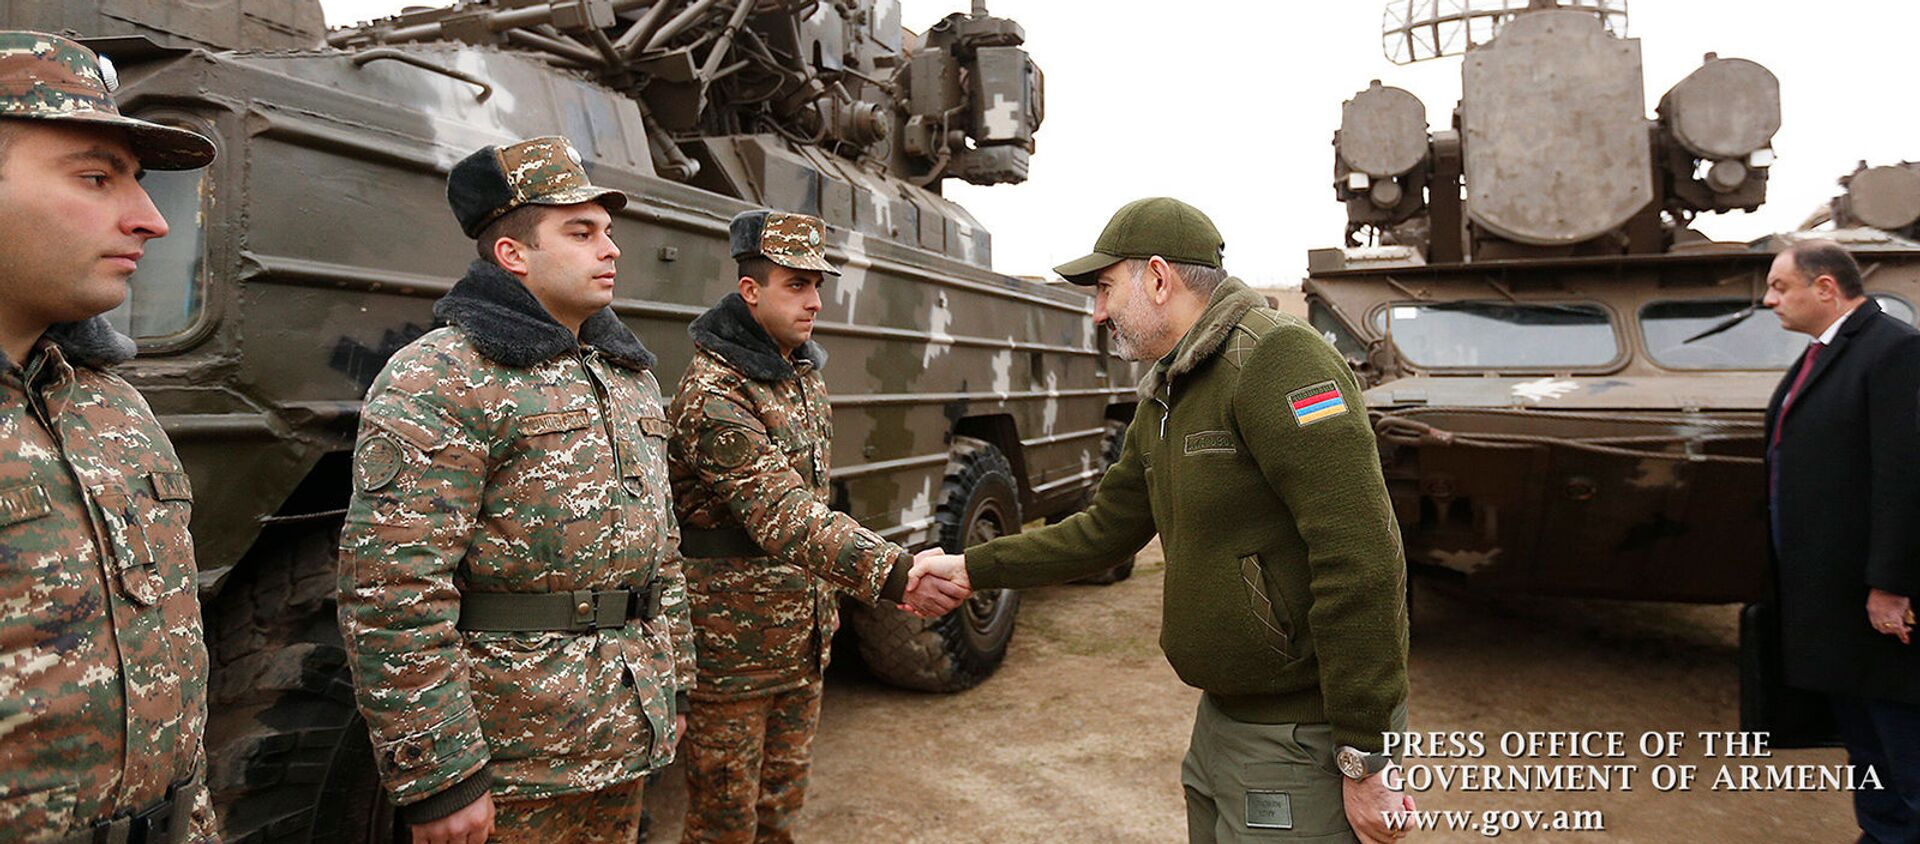 Премьер-министр Никол Пашинян во время посещения воинской части (27 декабря 2019).  - Sputnik Армения, 1920, 27.12.2019